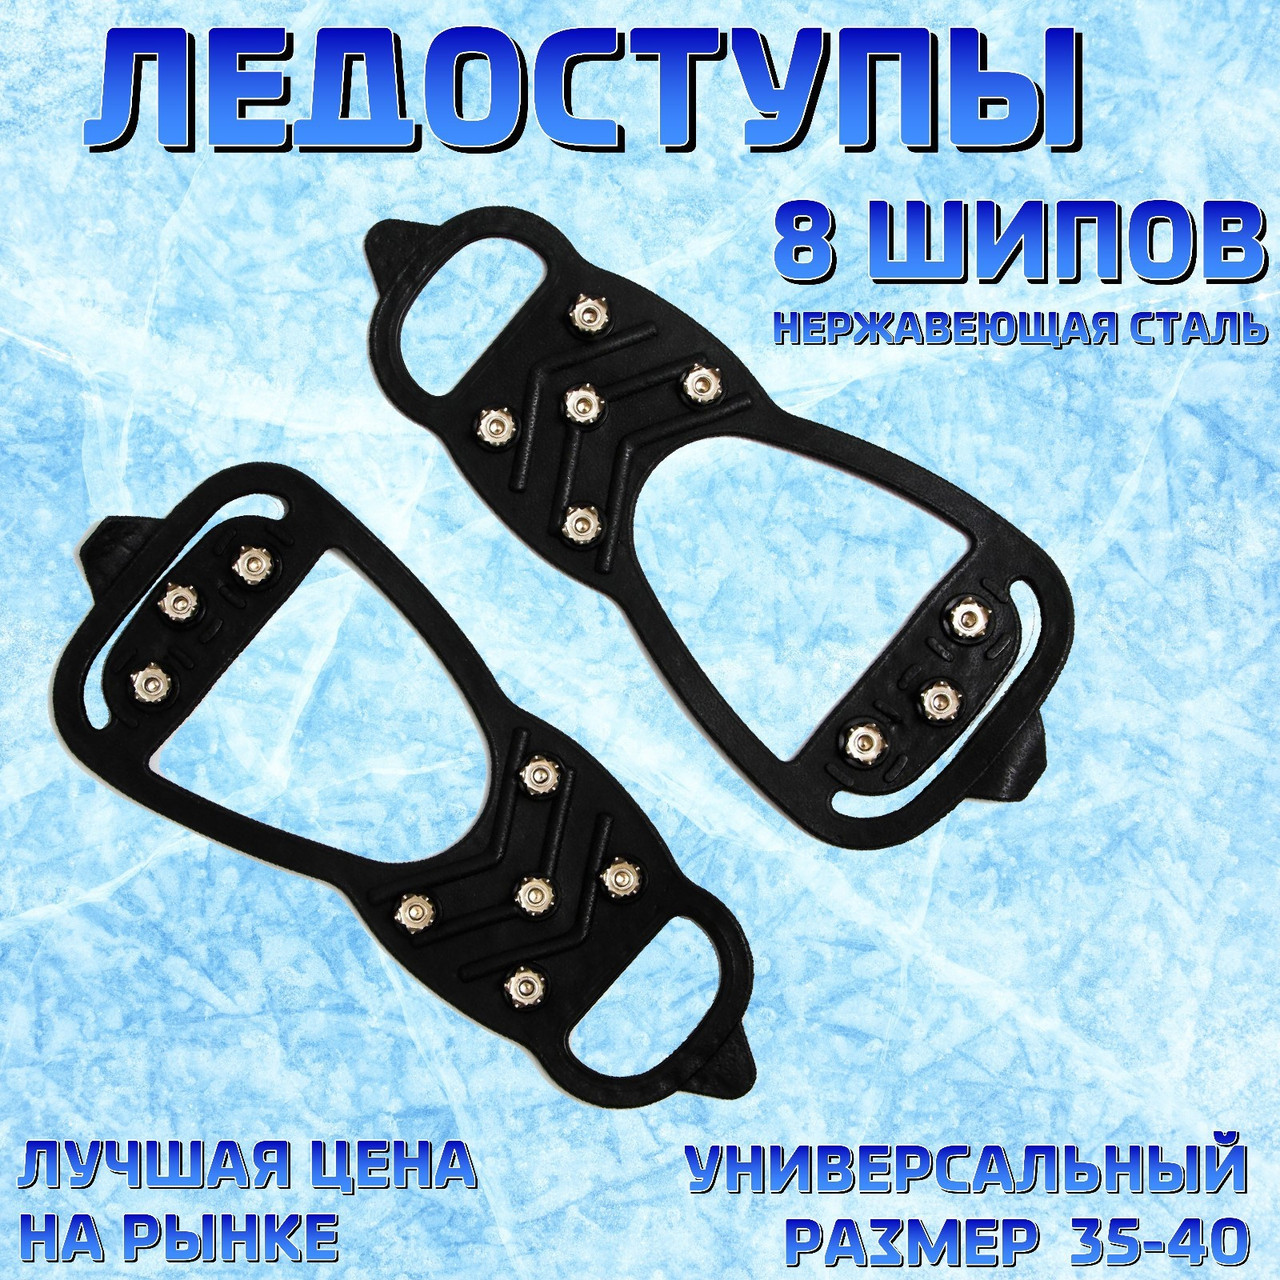 Ледоступы для зимней обуви "5 + 3  шипов" (размер 35-40).